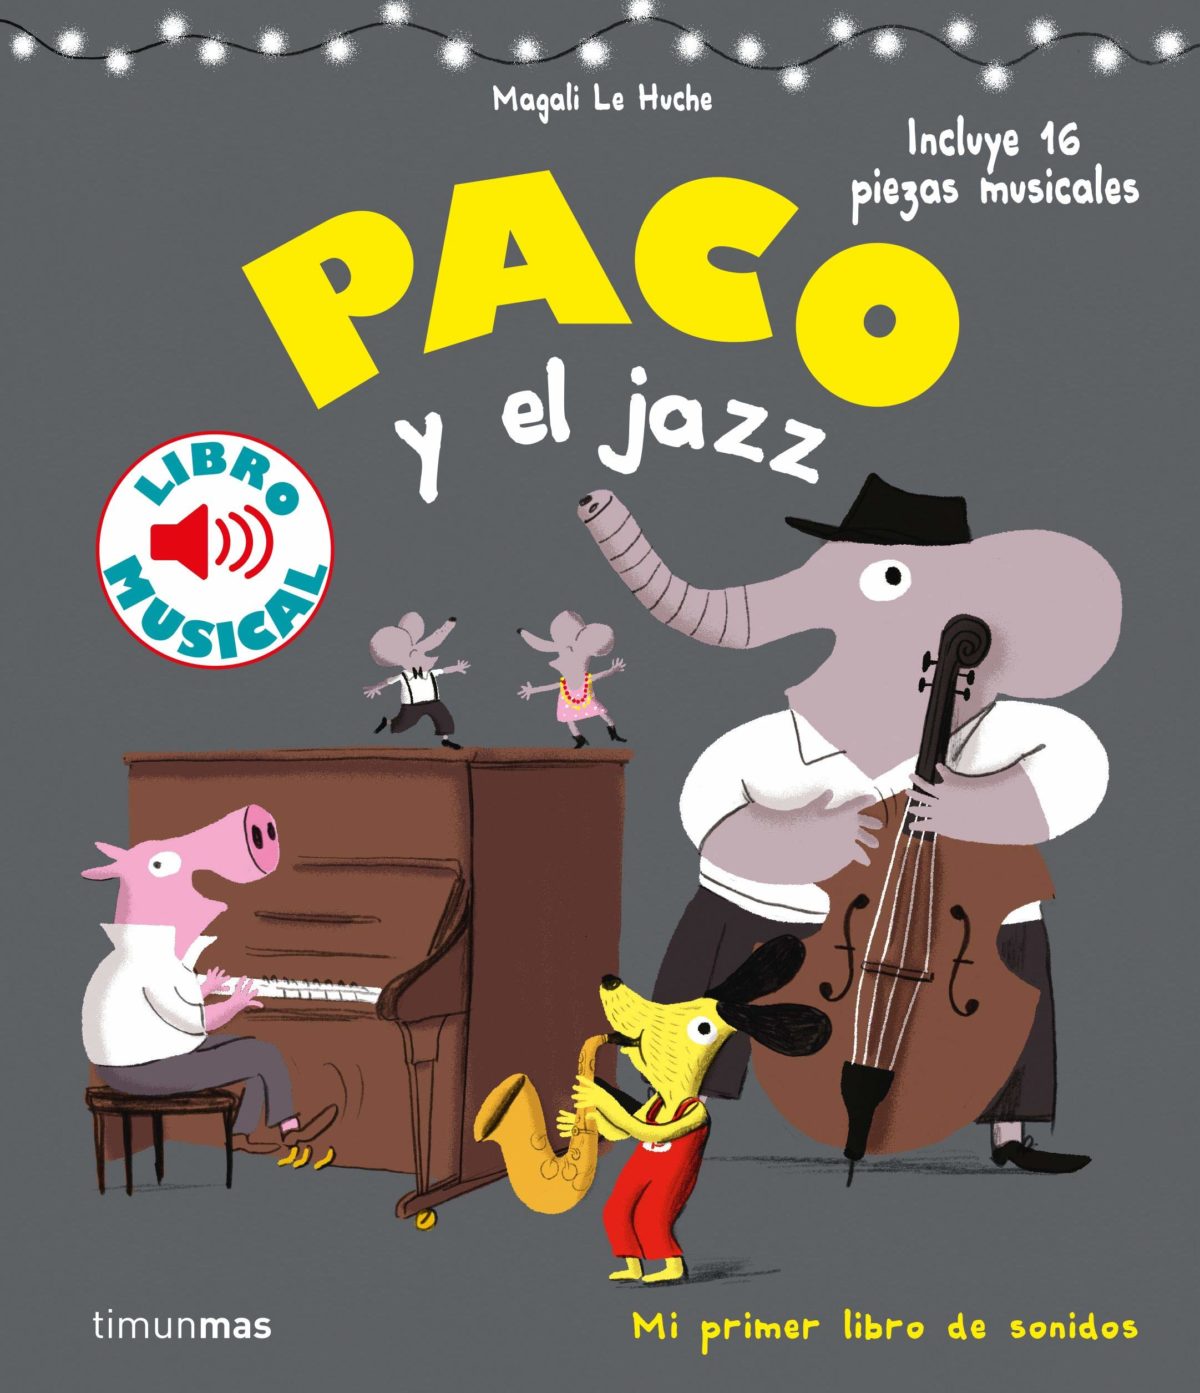 Paco y el jazz. Libro musical (Libros con sonido)